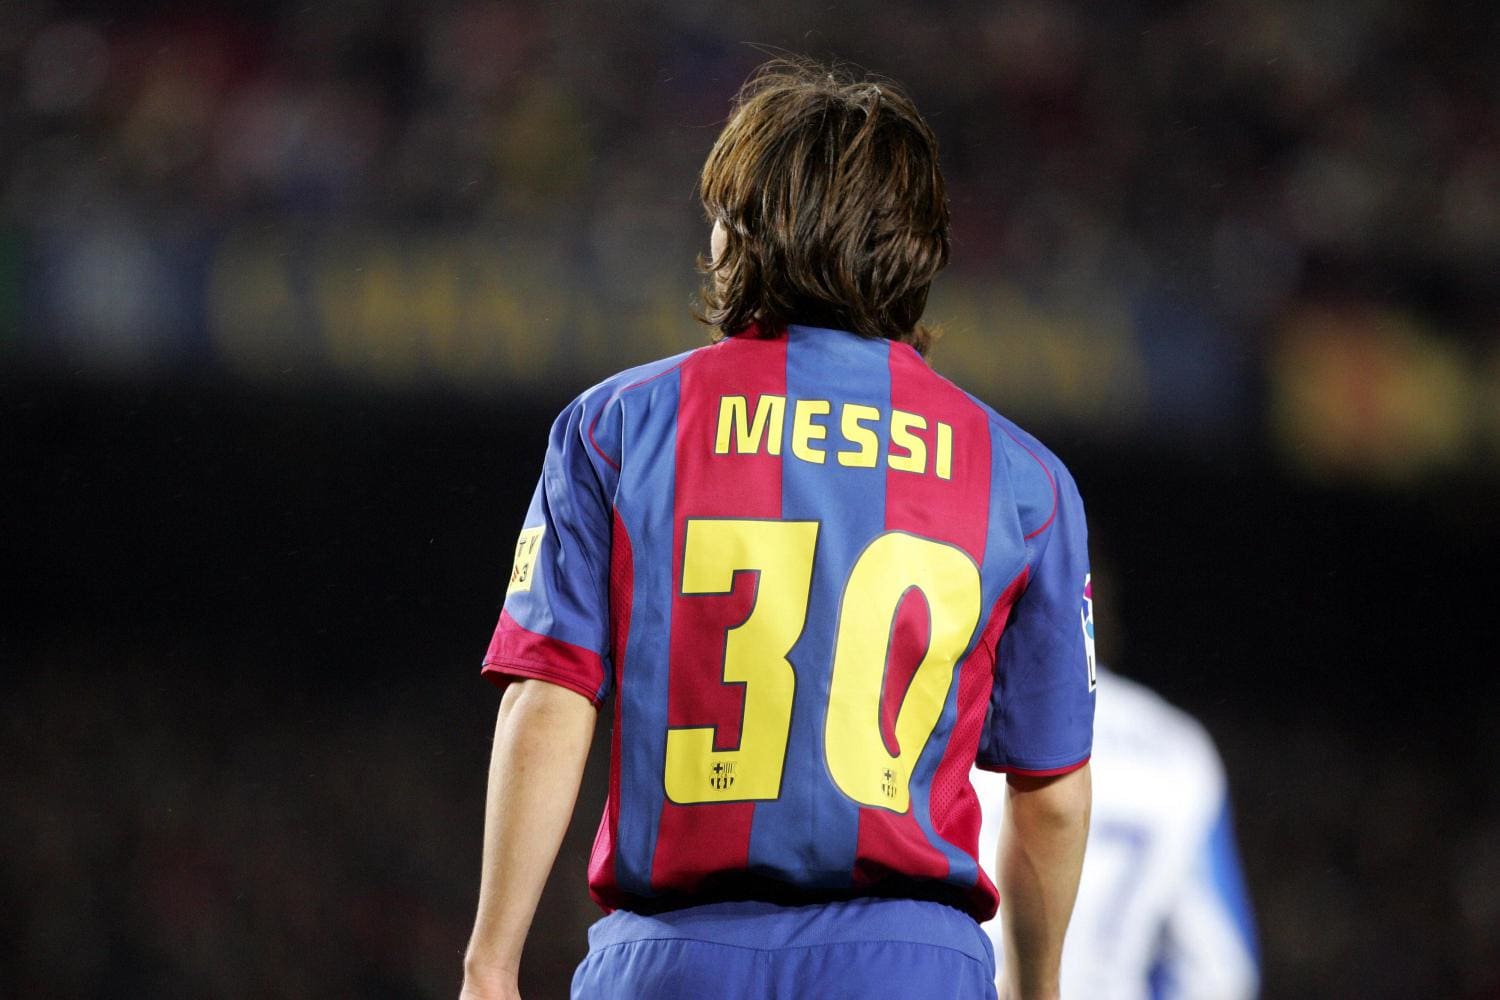 Pourquoi le maillot de Messi à Barcelone vaudra une fortune à lavenir